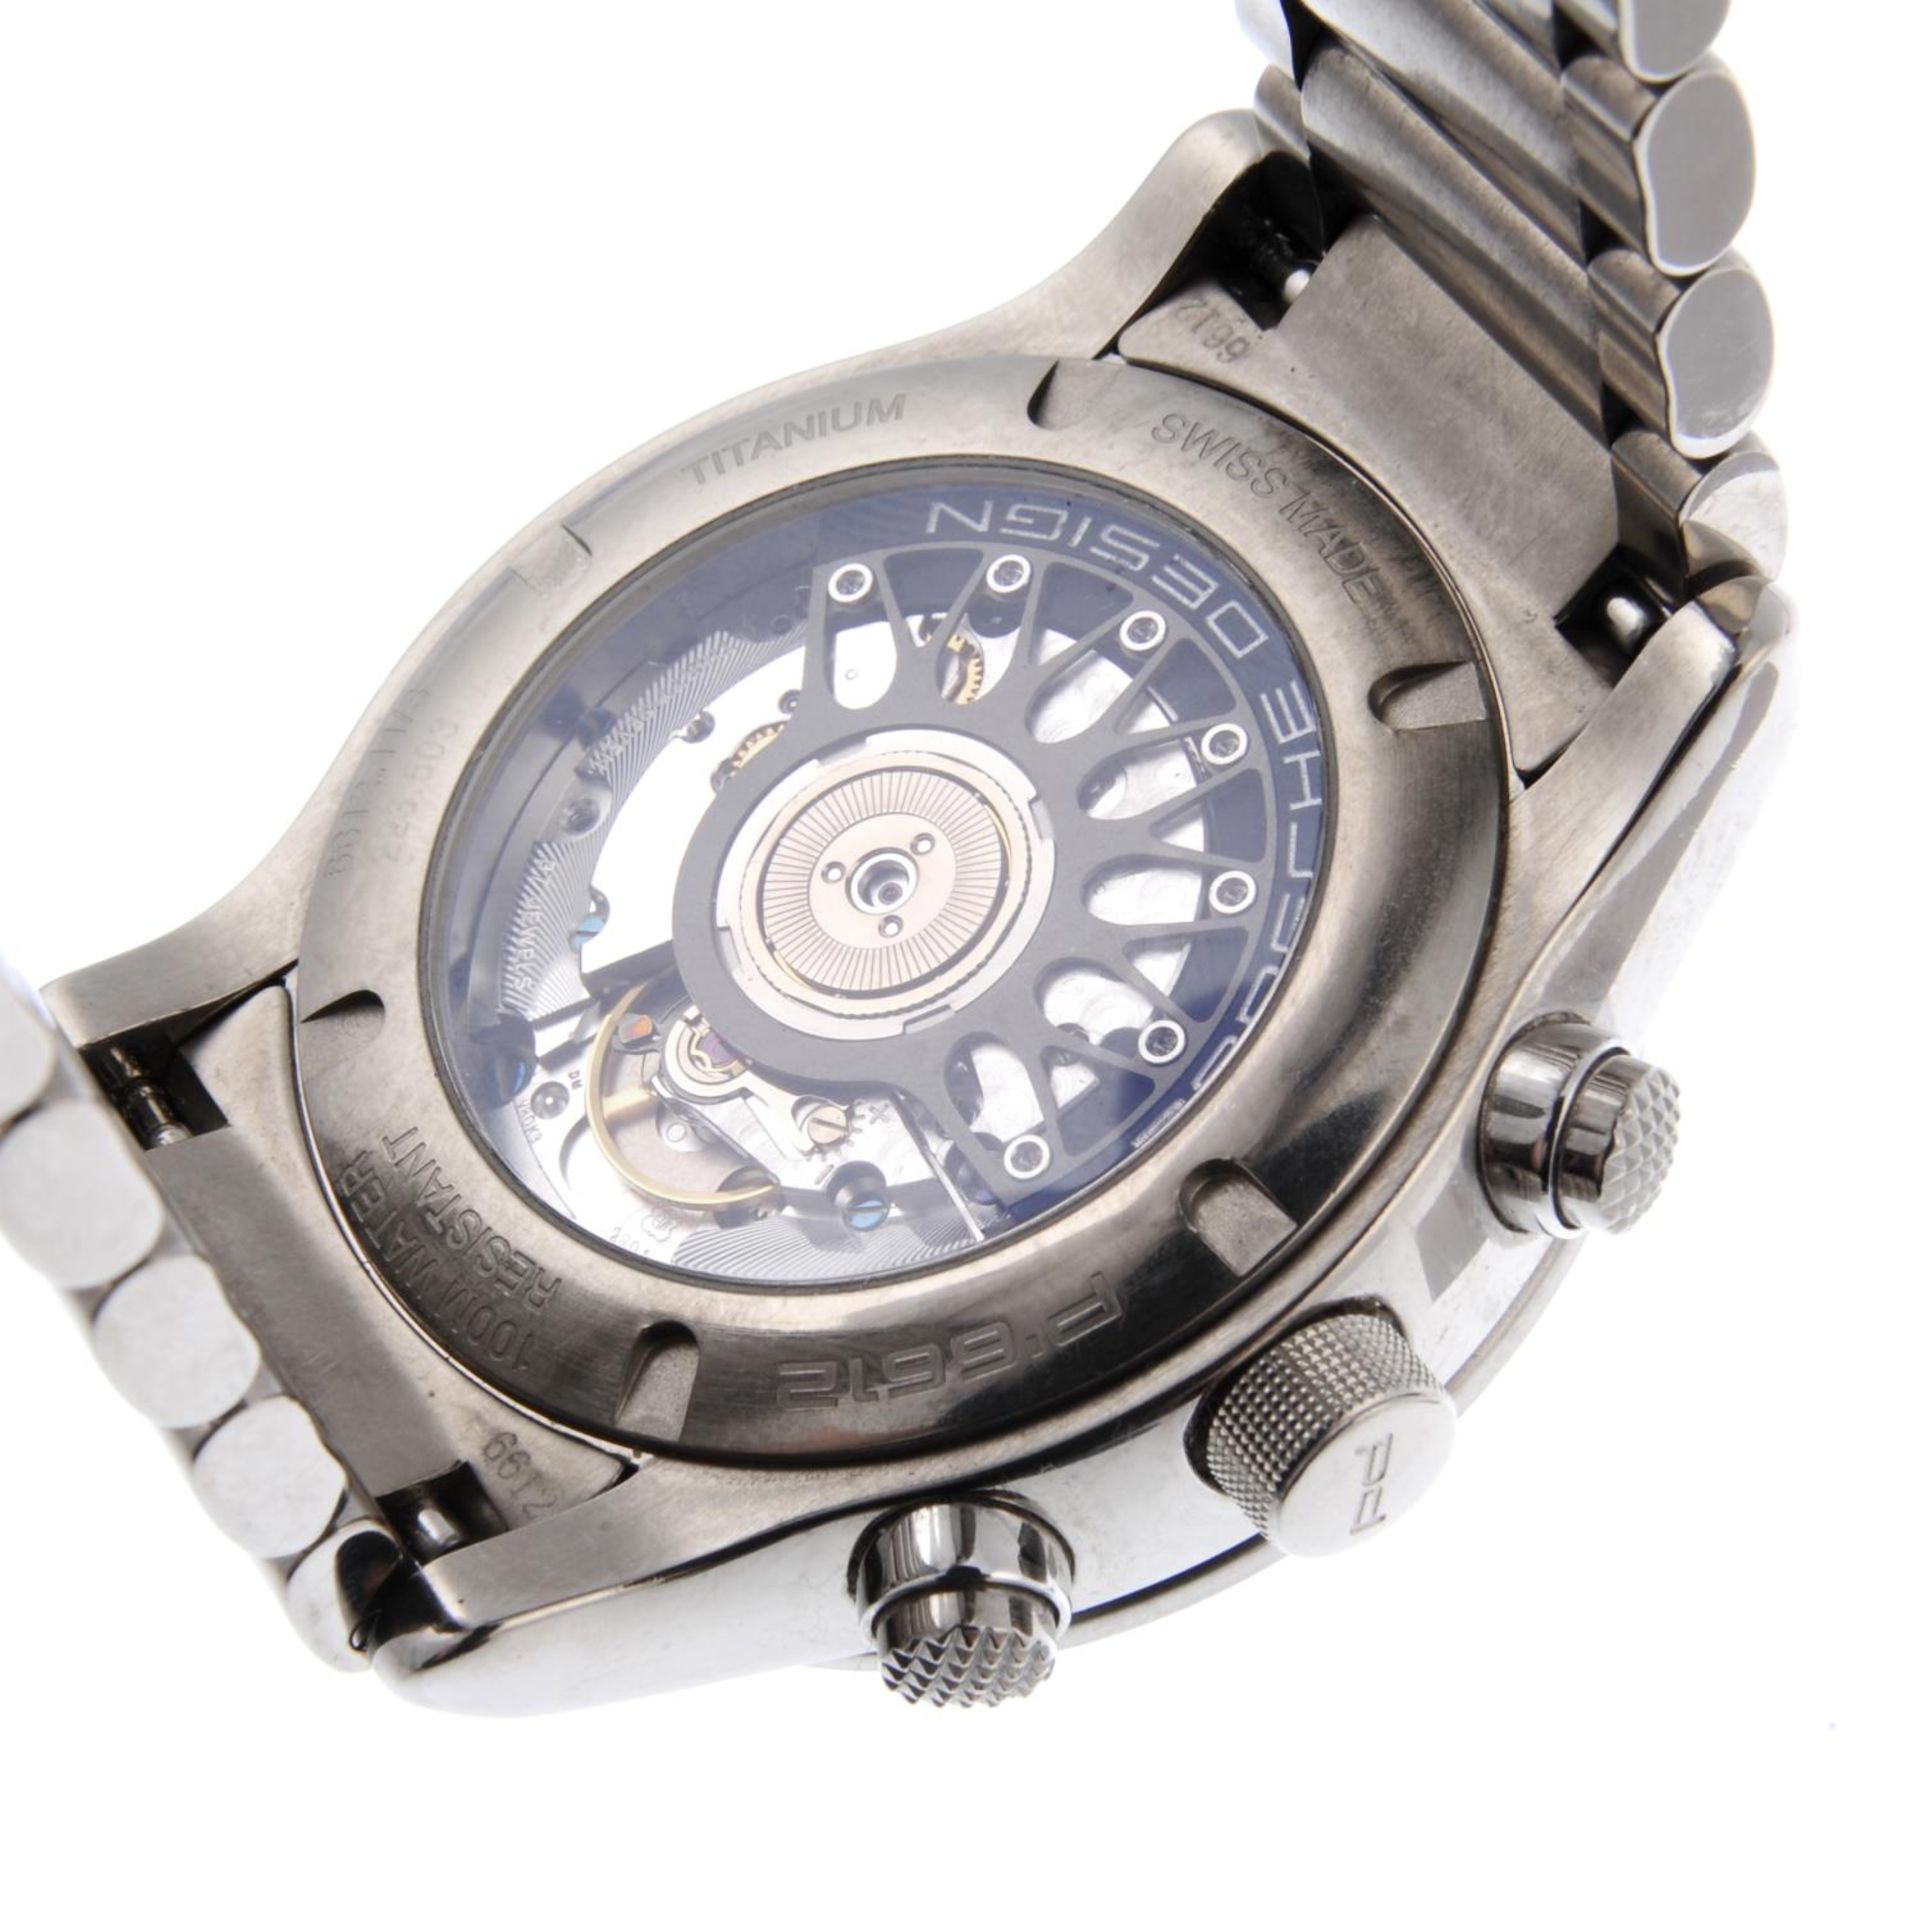 PORSCHE DESIGN - a gentleman's Dashboard chronograph bracelet watch. - Bild 4 aus 4